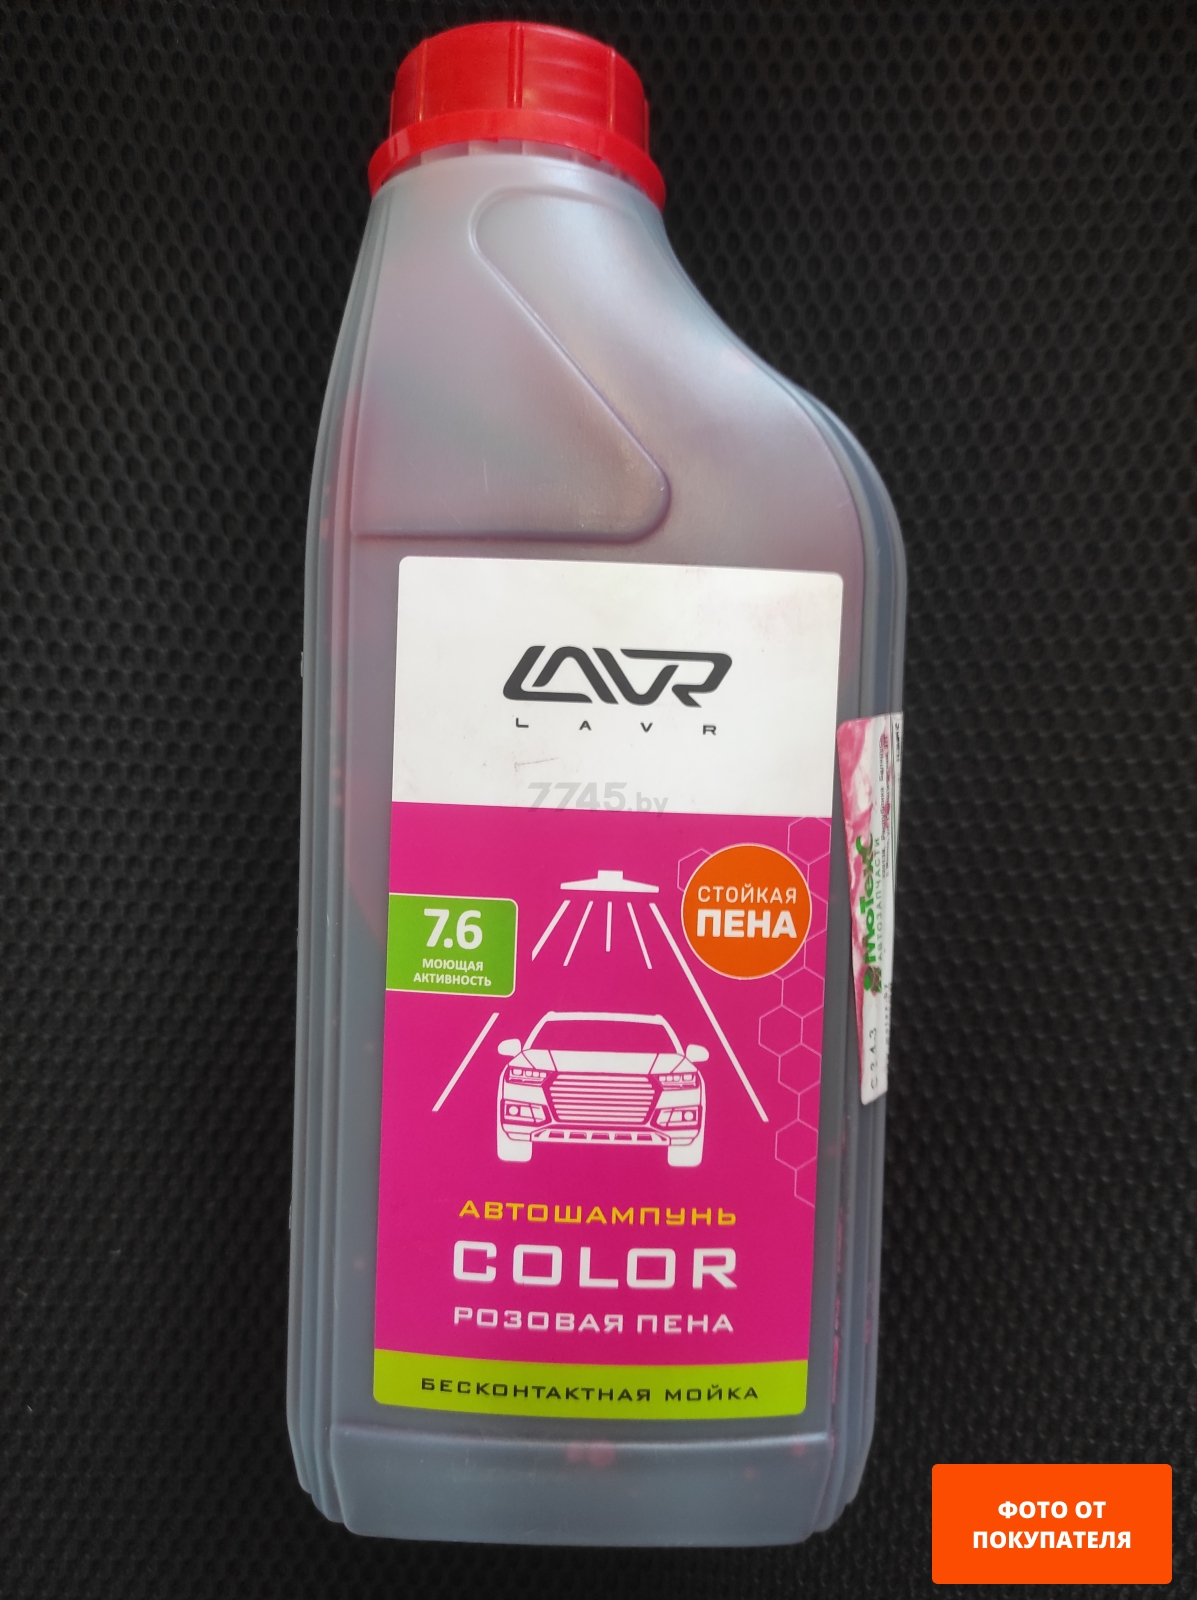 Автошампунь для бесконтактной мойки LAVR Color 1 л (LN2331) - Фото 2